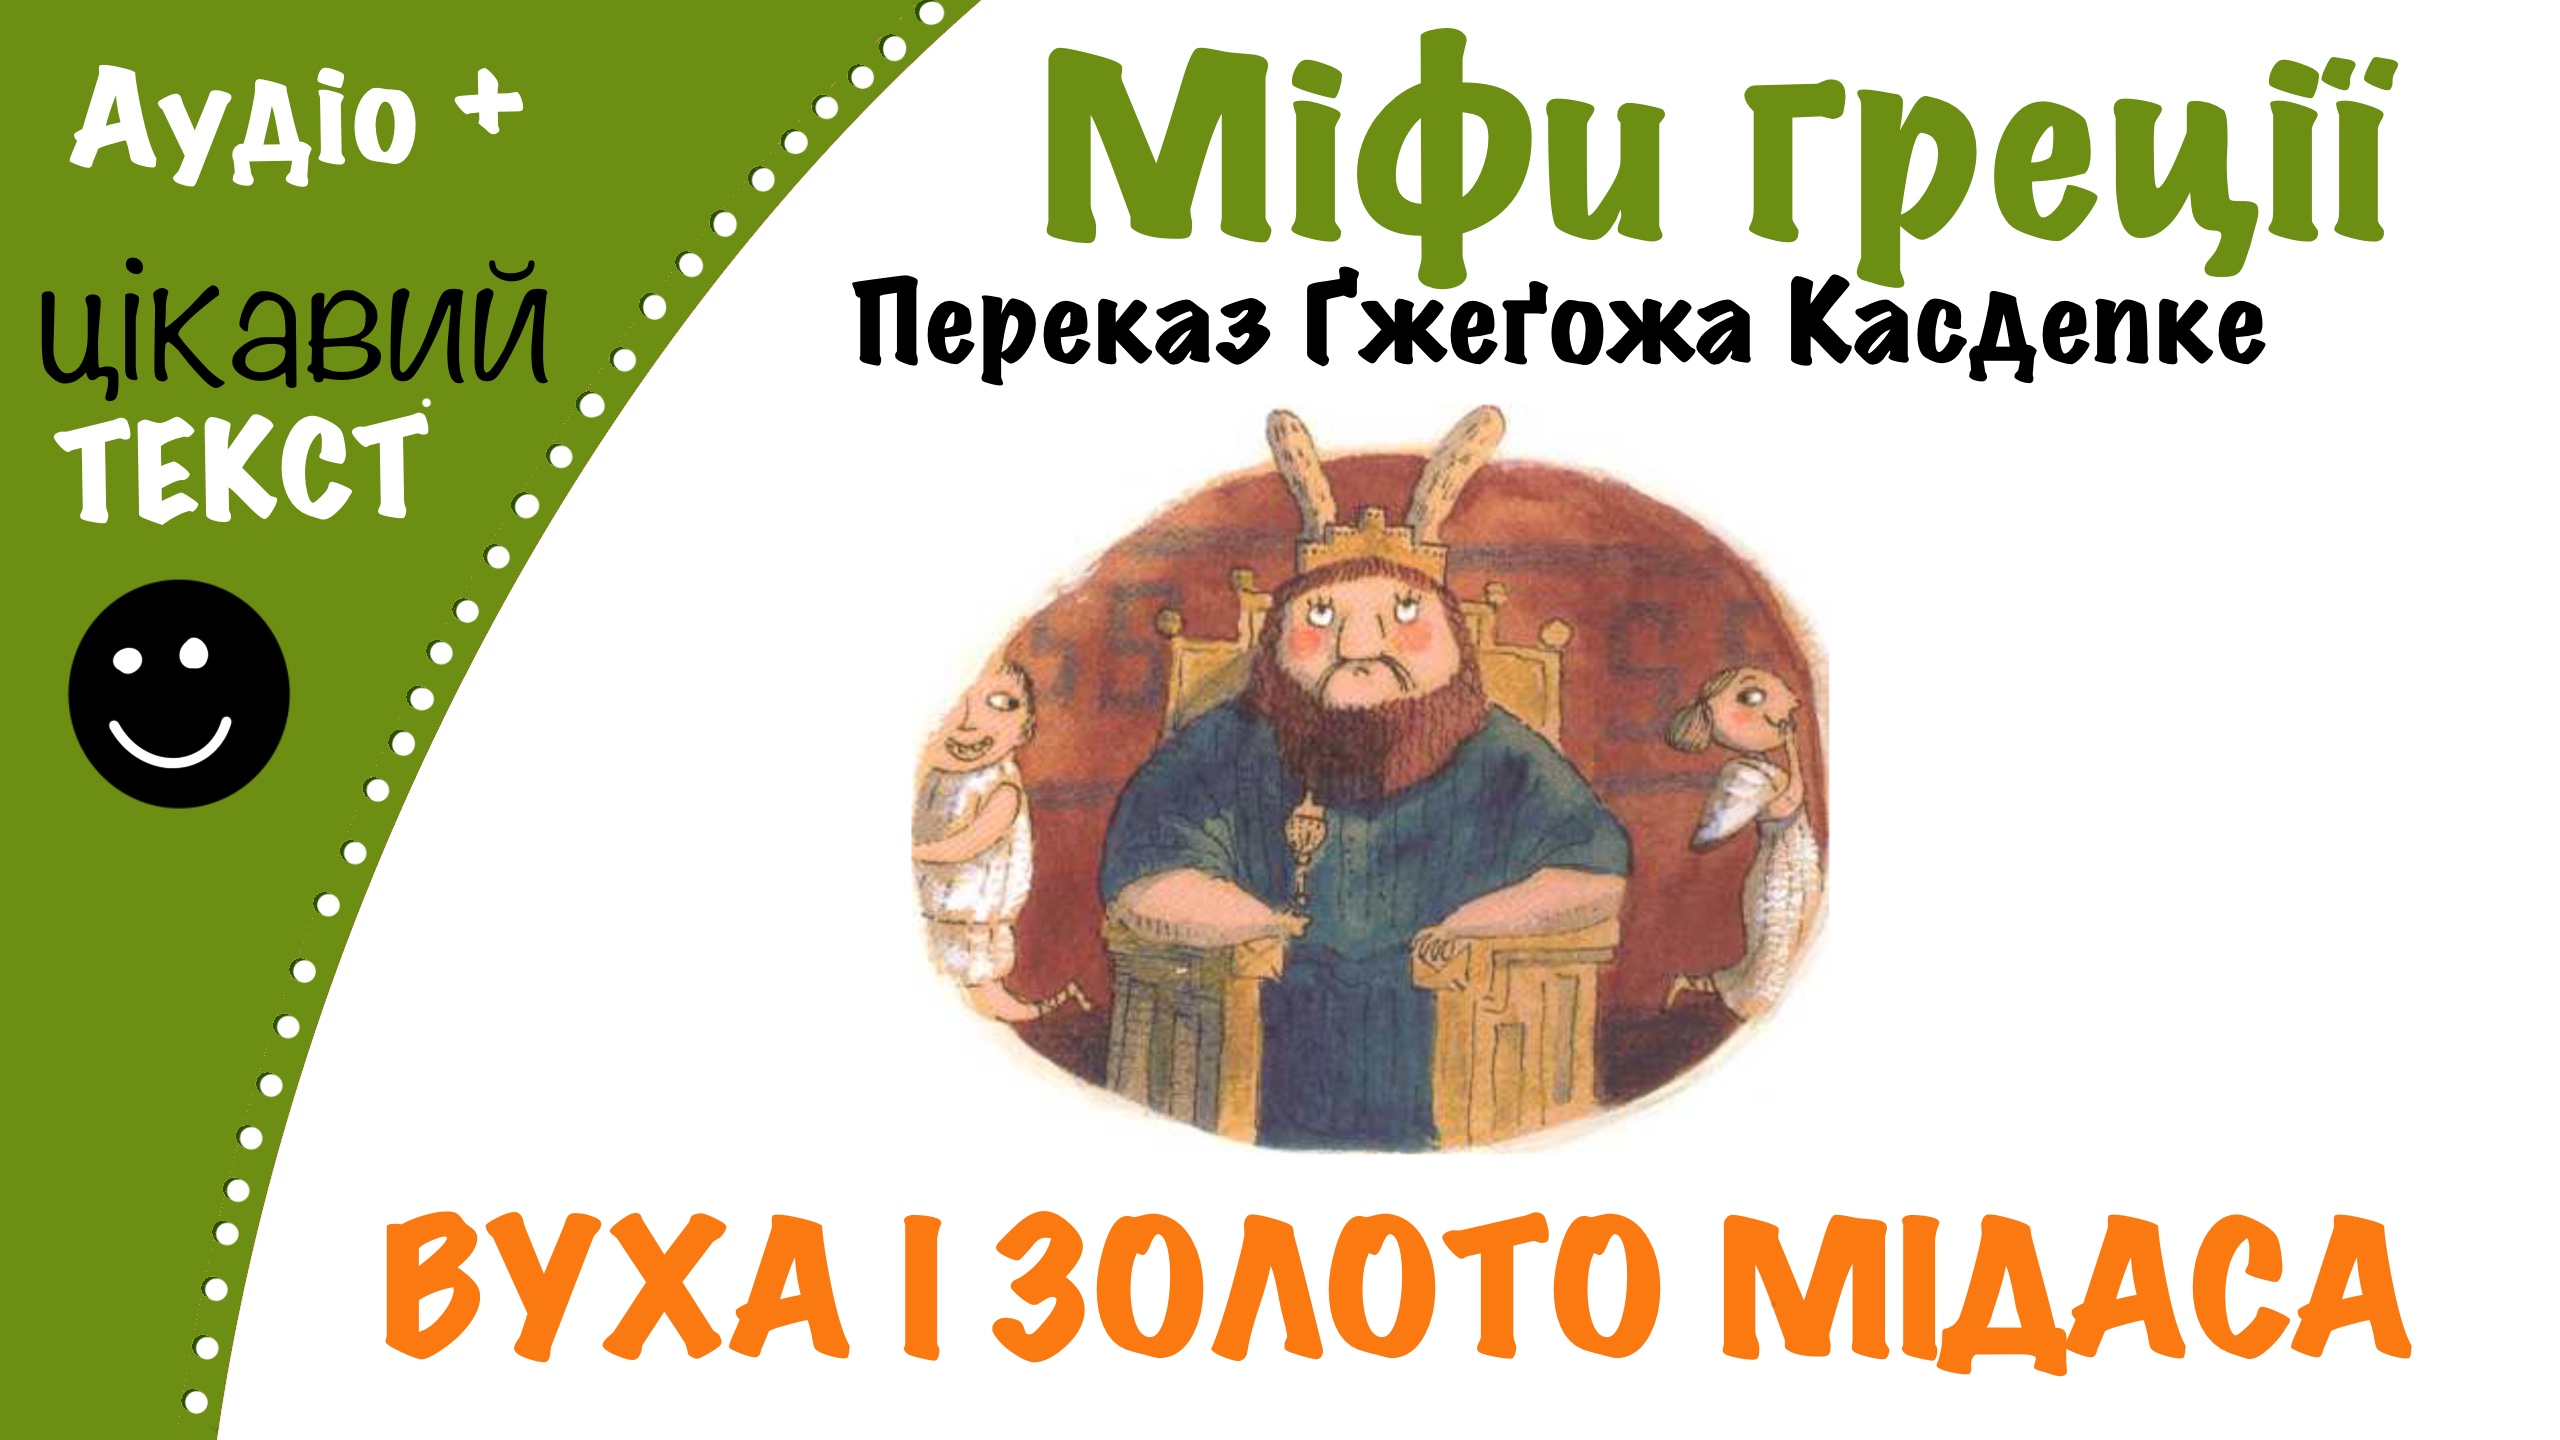 Перейти до: Грецький міф про Мідаса. Переказ Ґжеґожа Касдепке